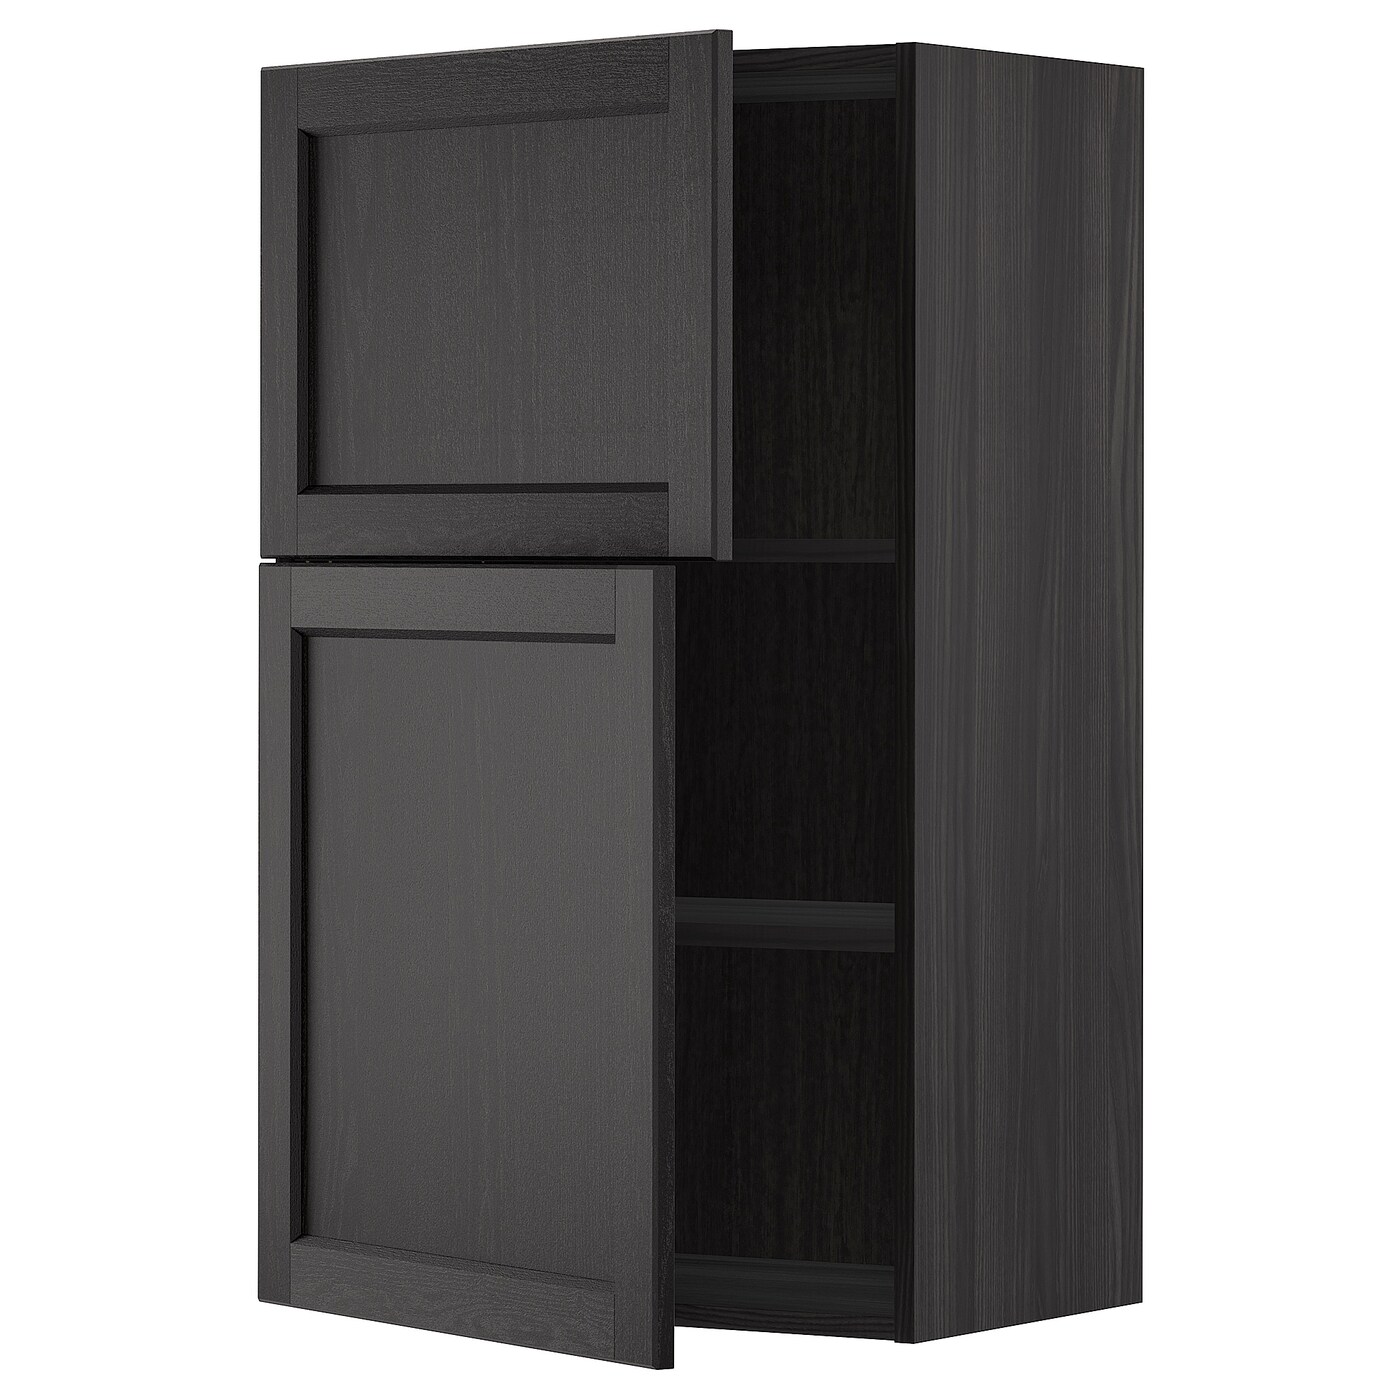 Навесной шкаф с полкой - METOD IKEA/ МЕТОД ИКЕА, 100х60 см,  черный